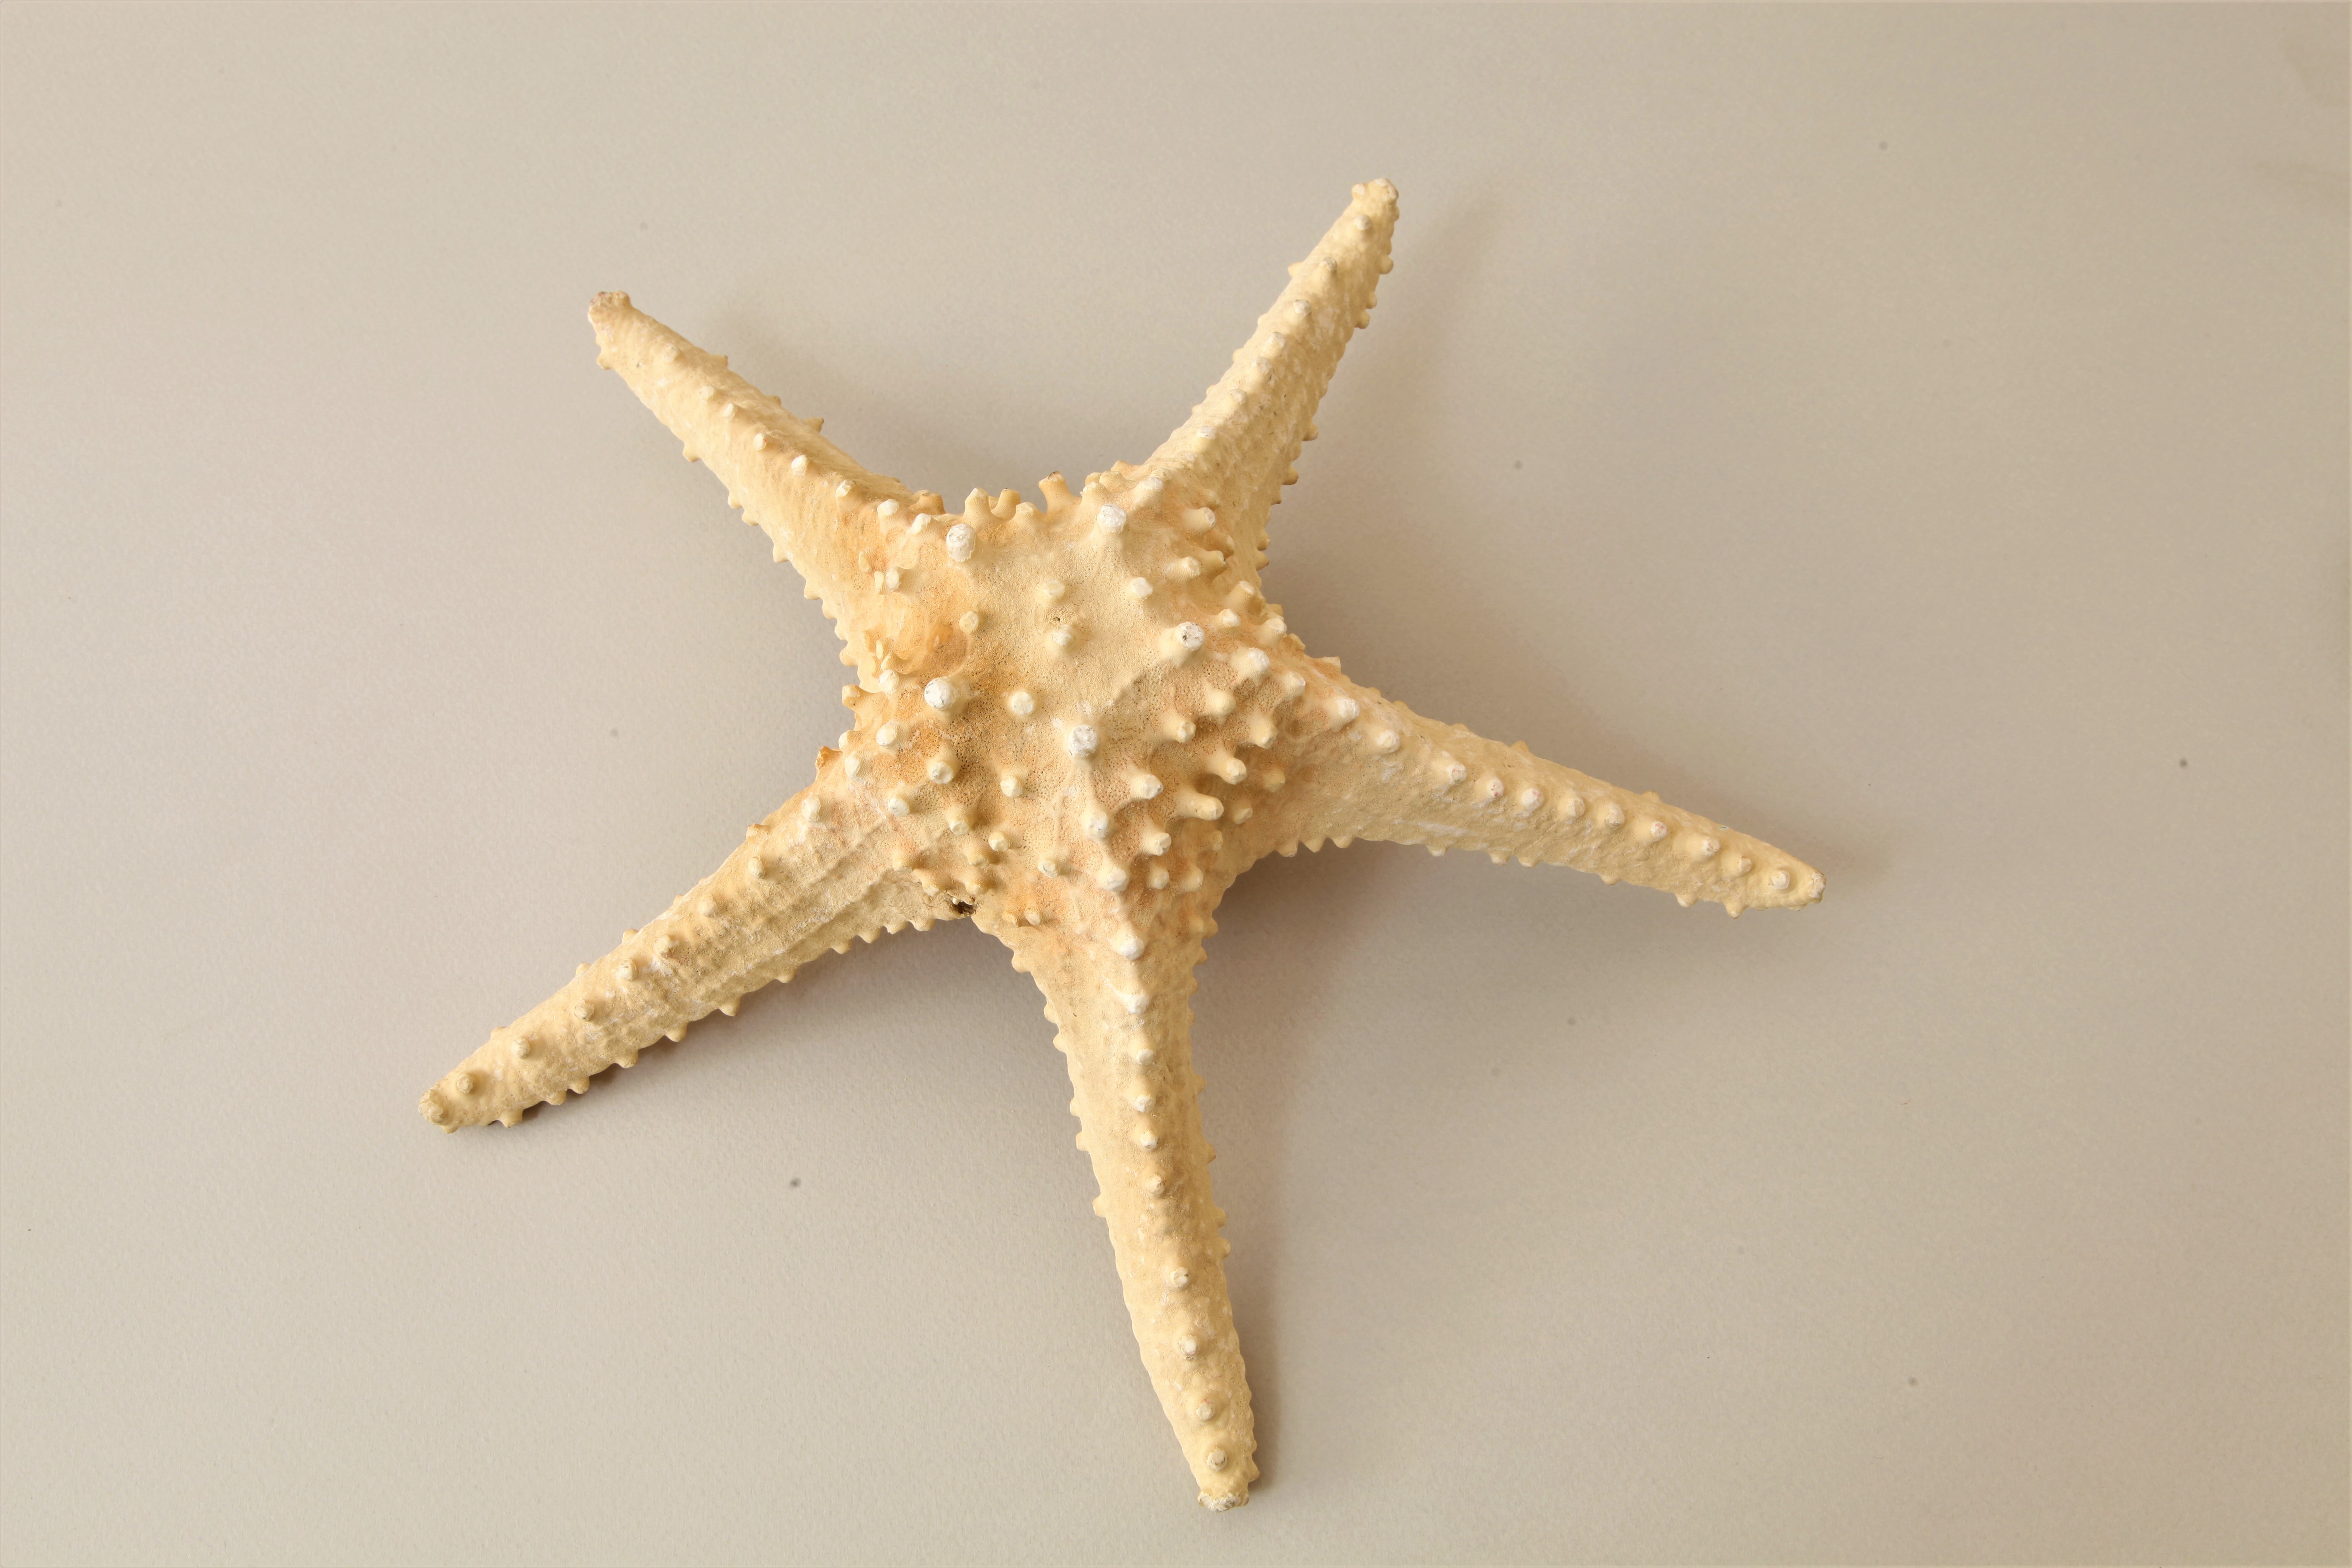  ستاره دریایی ( sea star)/موزه برادران امیدوار